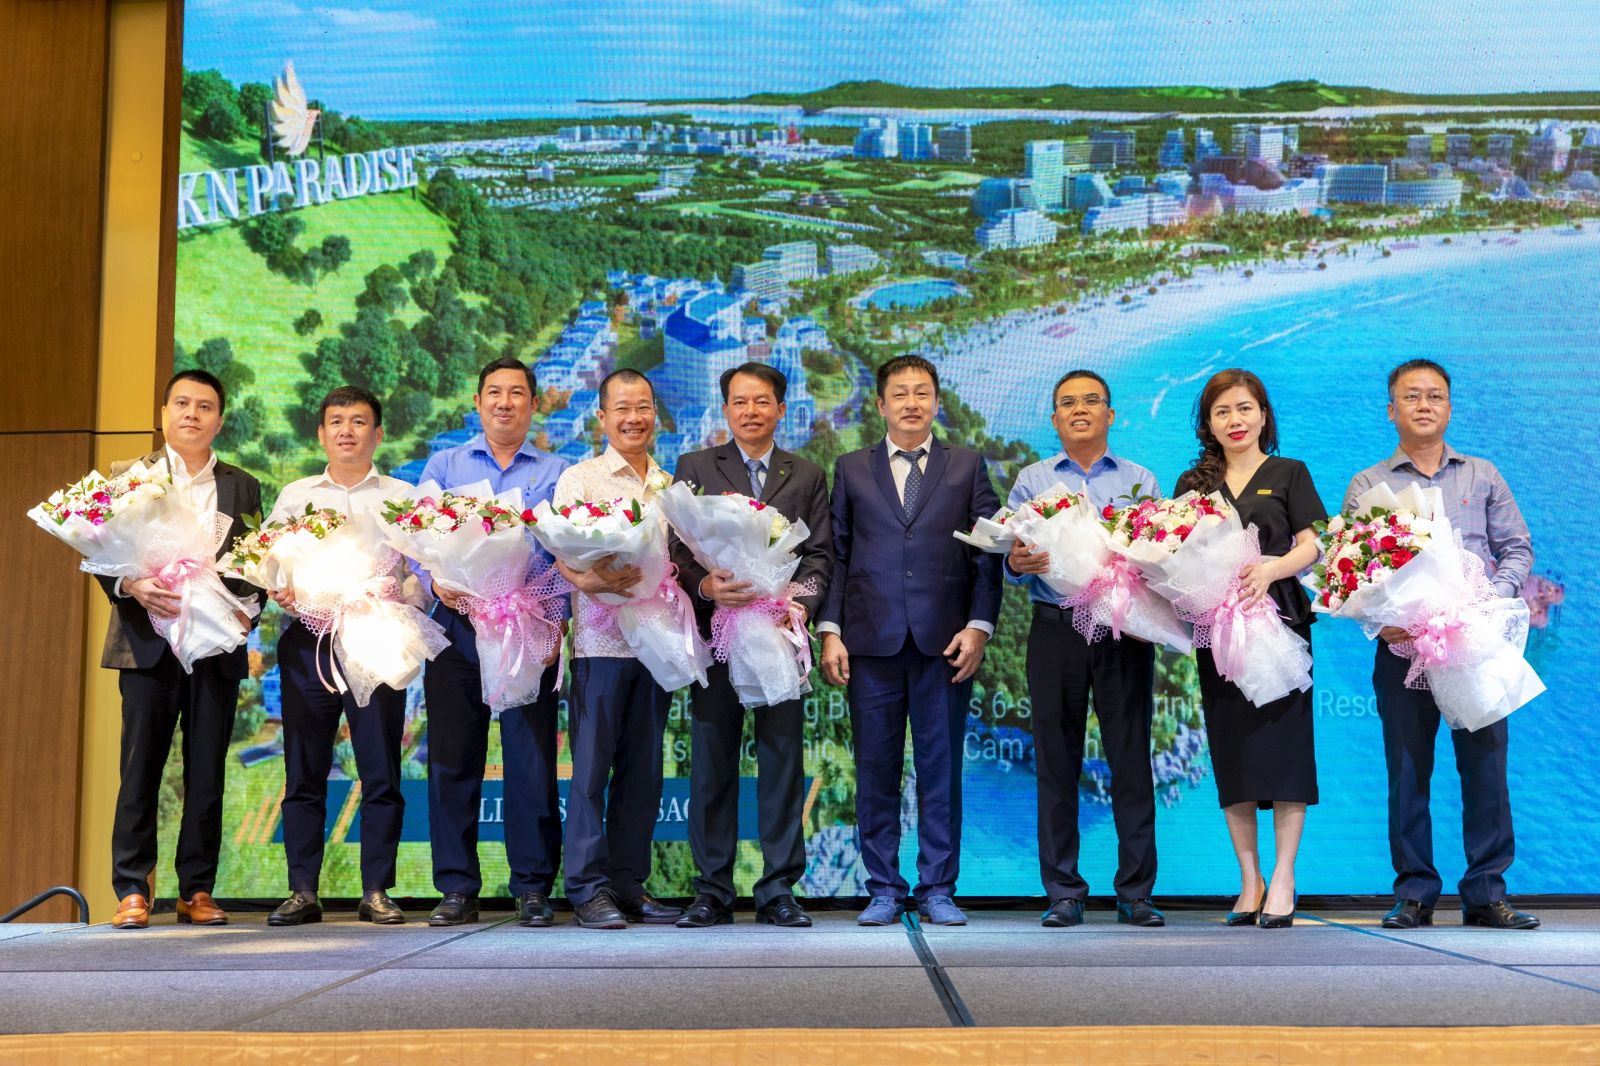 Đại diện Chủ đầu tư dự án KN Paradise tặng hoa cho các đối tác tài trợ chính là các ngân hàng hàng đầu tại Việt Nam